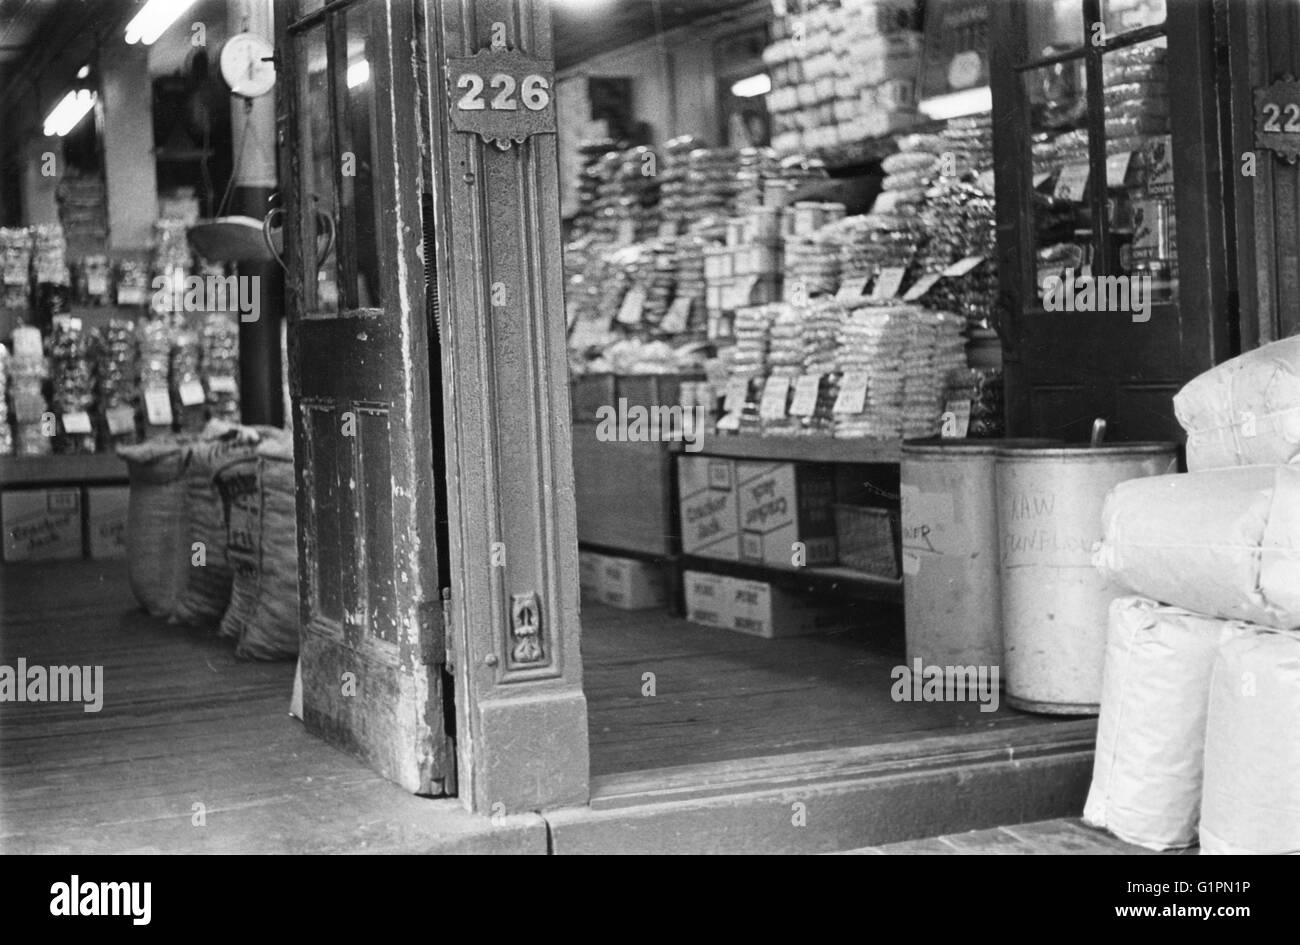 Mercato di WASHINGTON, c1960. La porta di un negozio nel mercato di Washington in Manhattan. Fotografato nei primi anni sessanta, poco prima di essere demolita per far posto al World Trade Center. Foto Stock